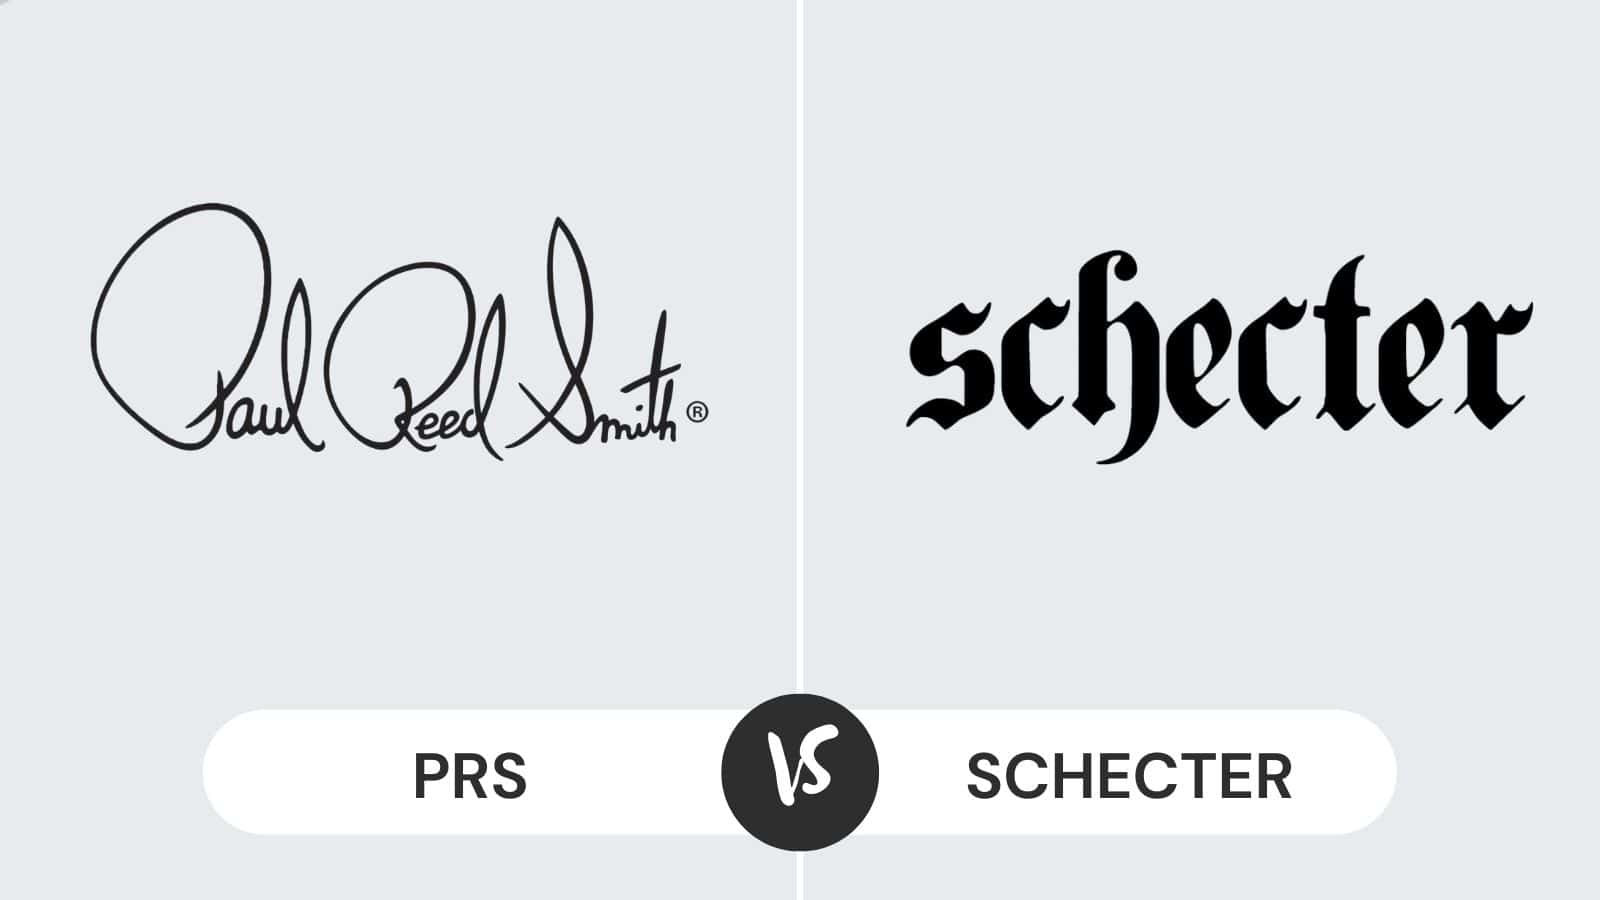 PRS vs Schecter